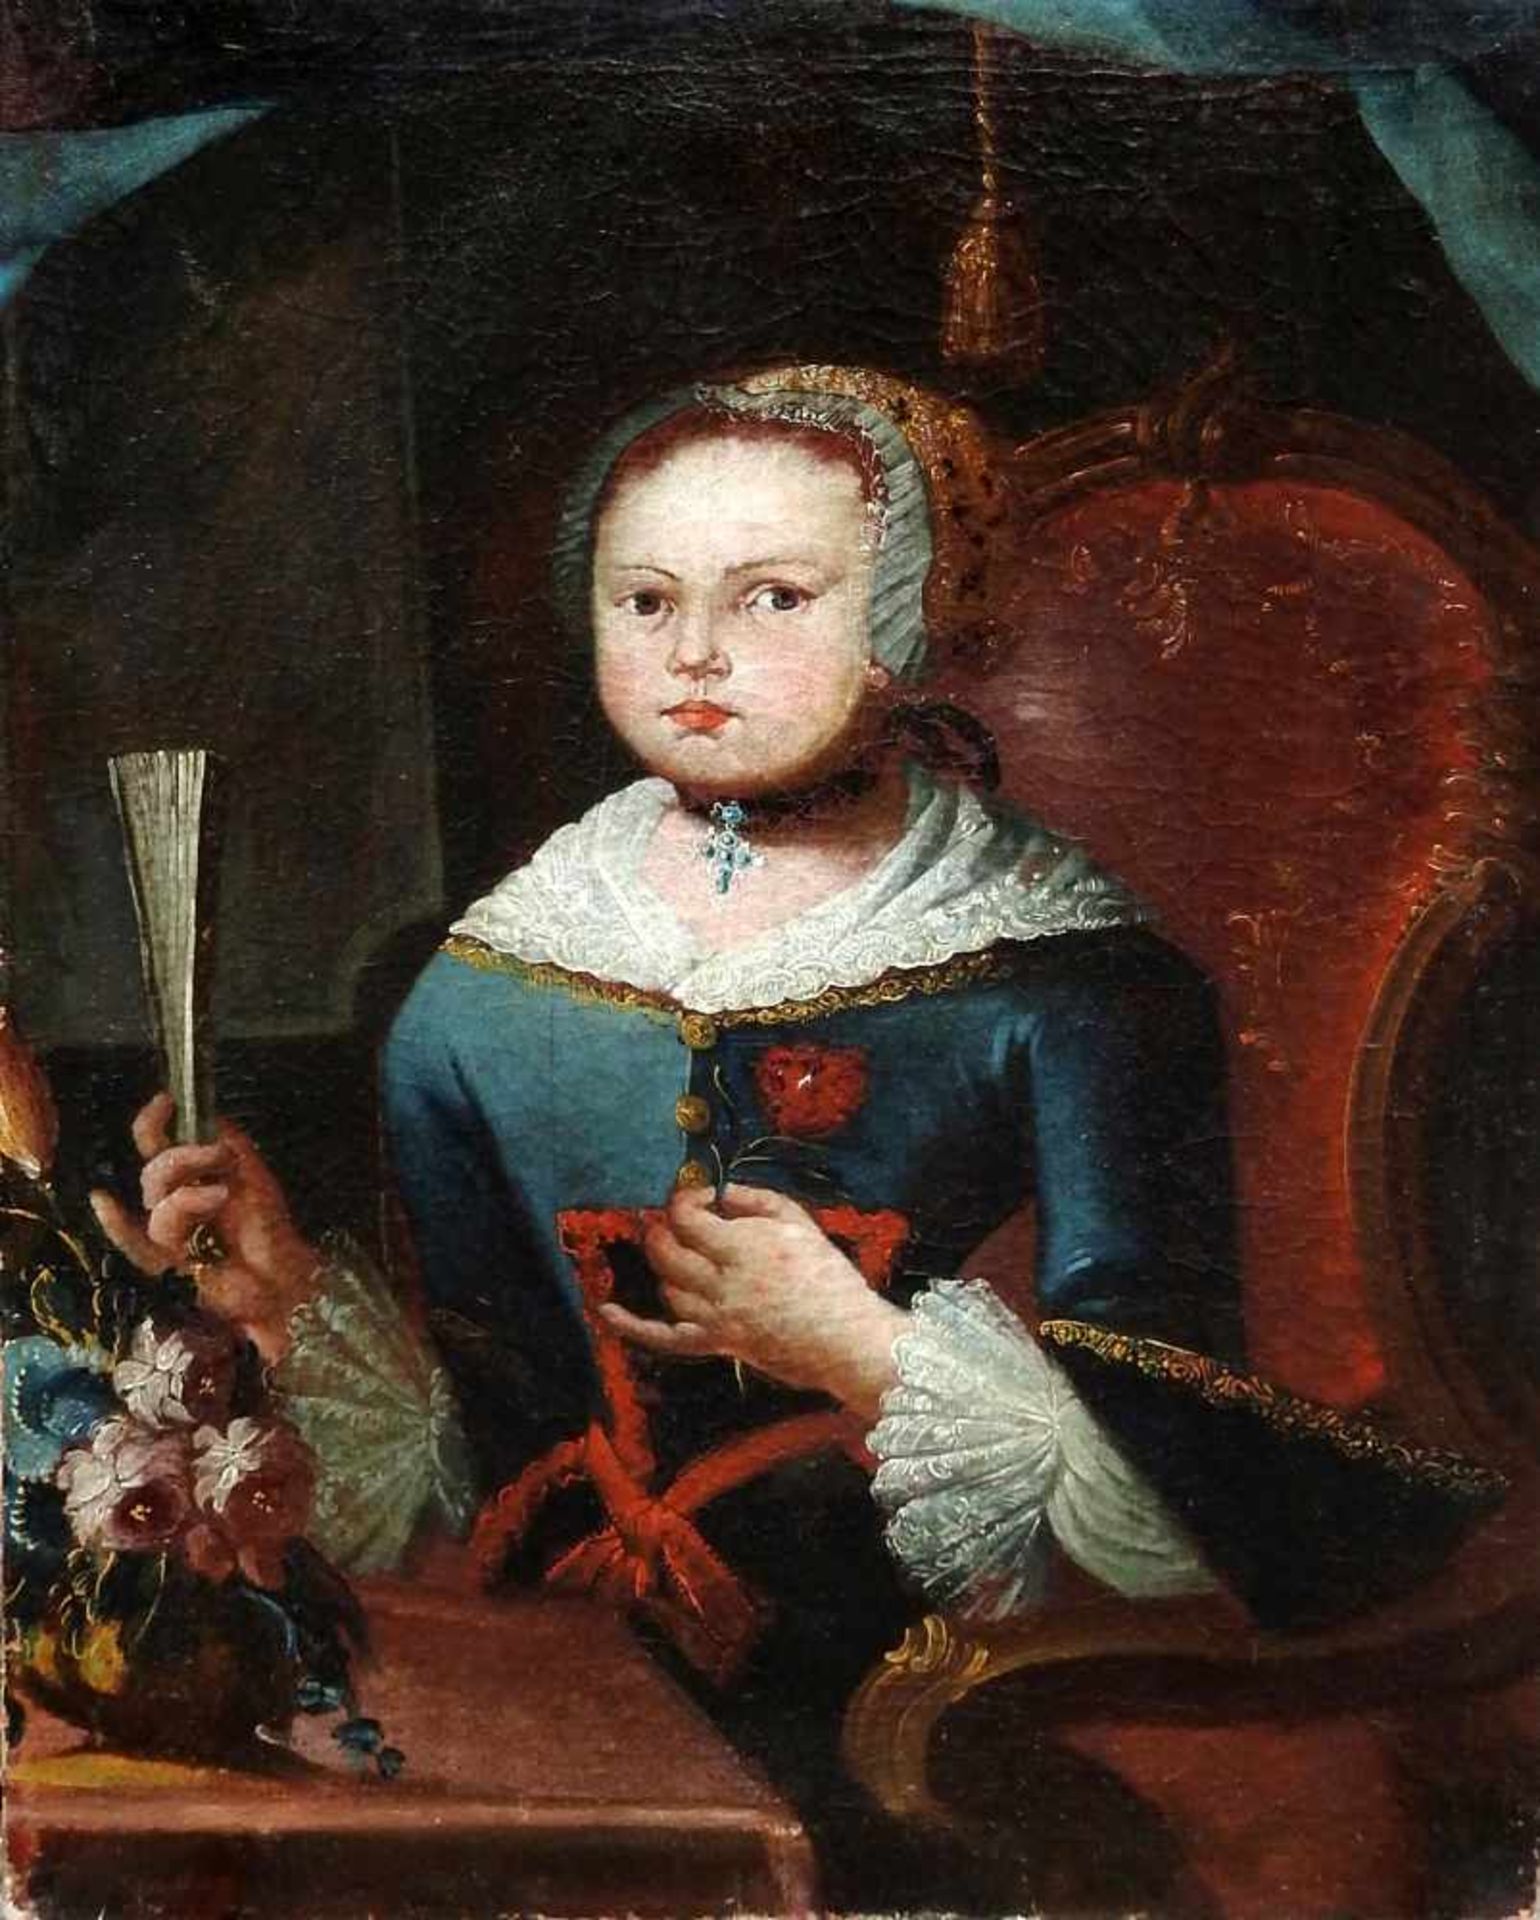 Portrait eines jungen Mädchens